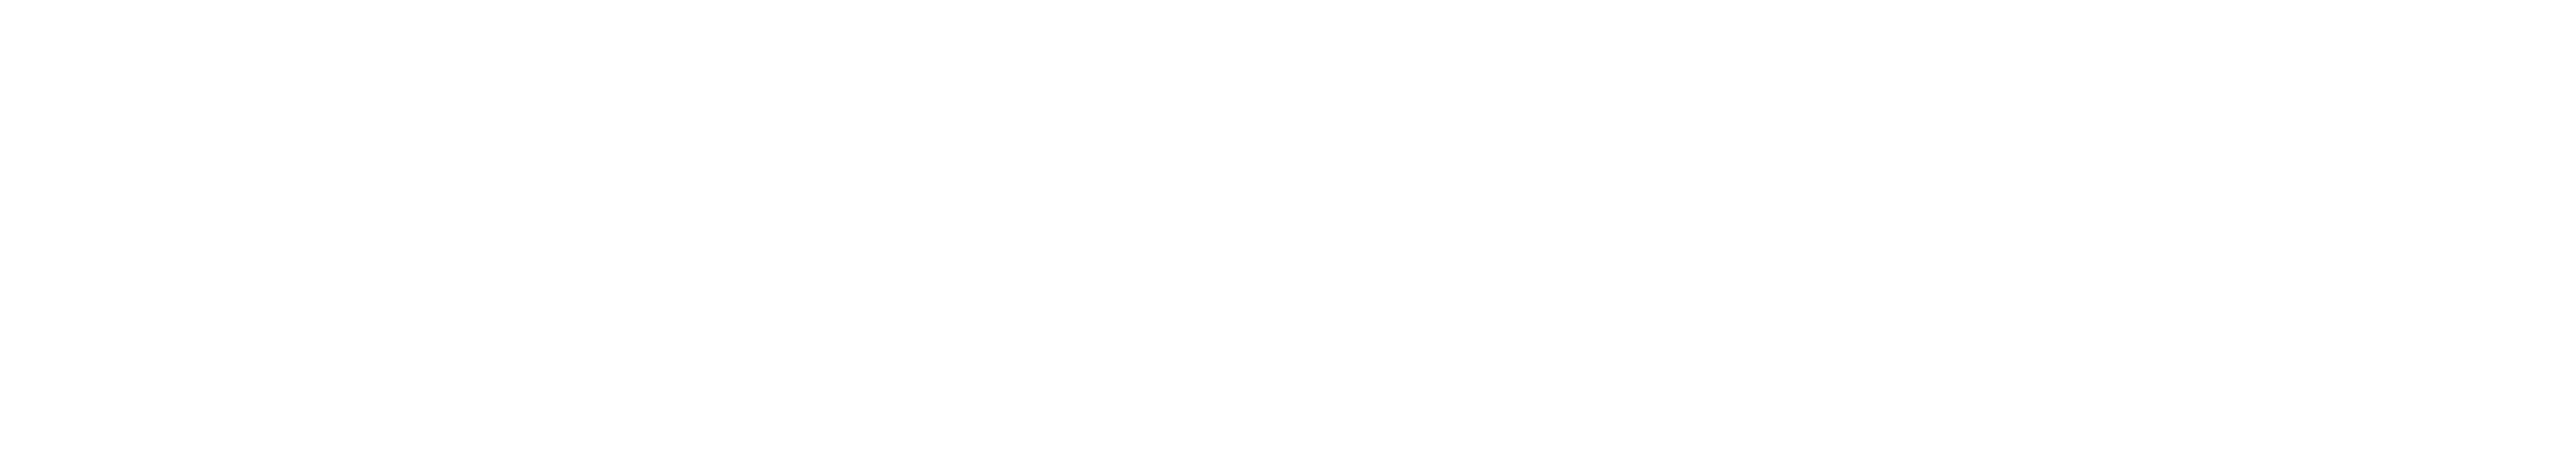 swim stars logo